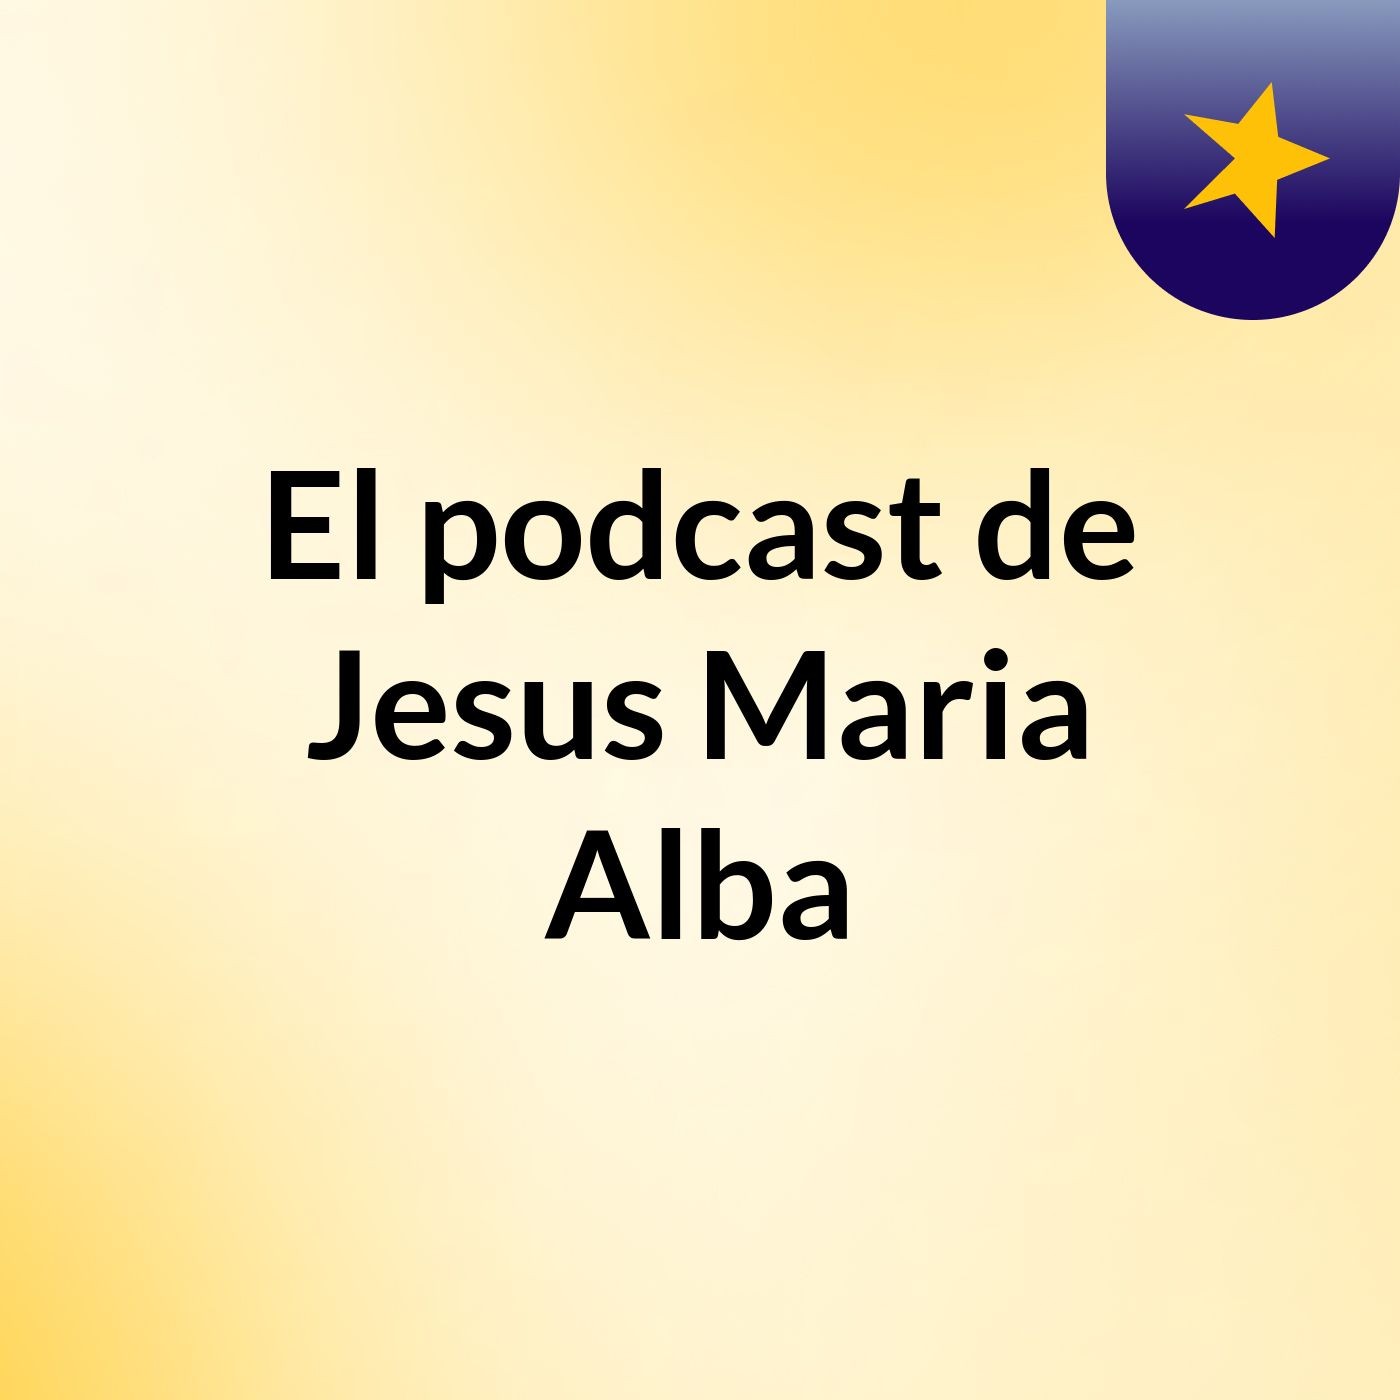 Episodio 2 - El podcast de Jesus Maria Alba